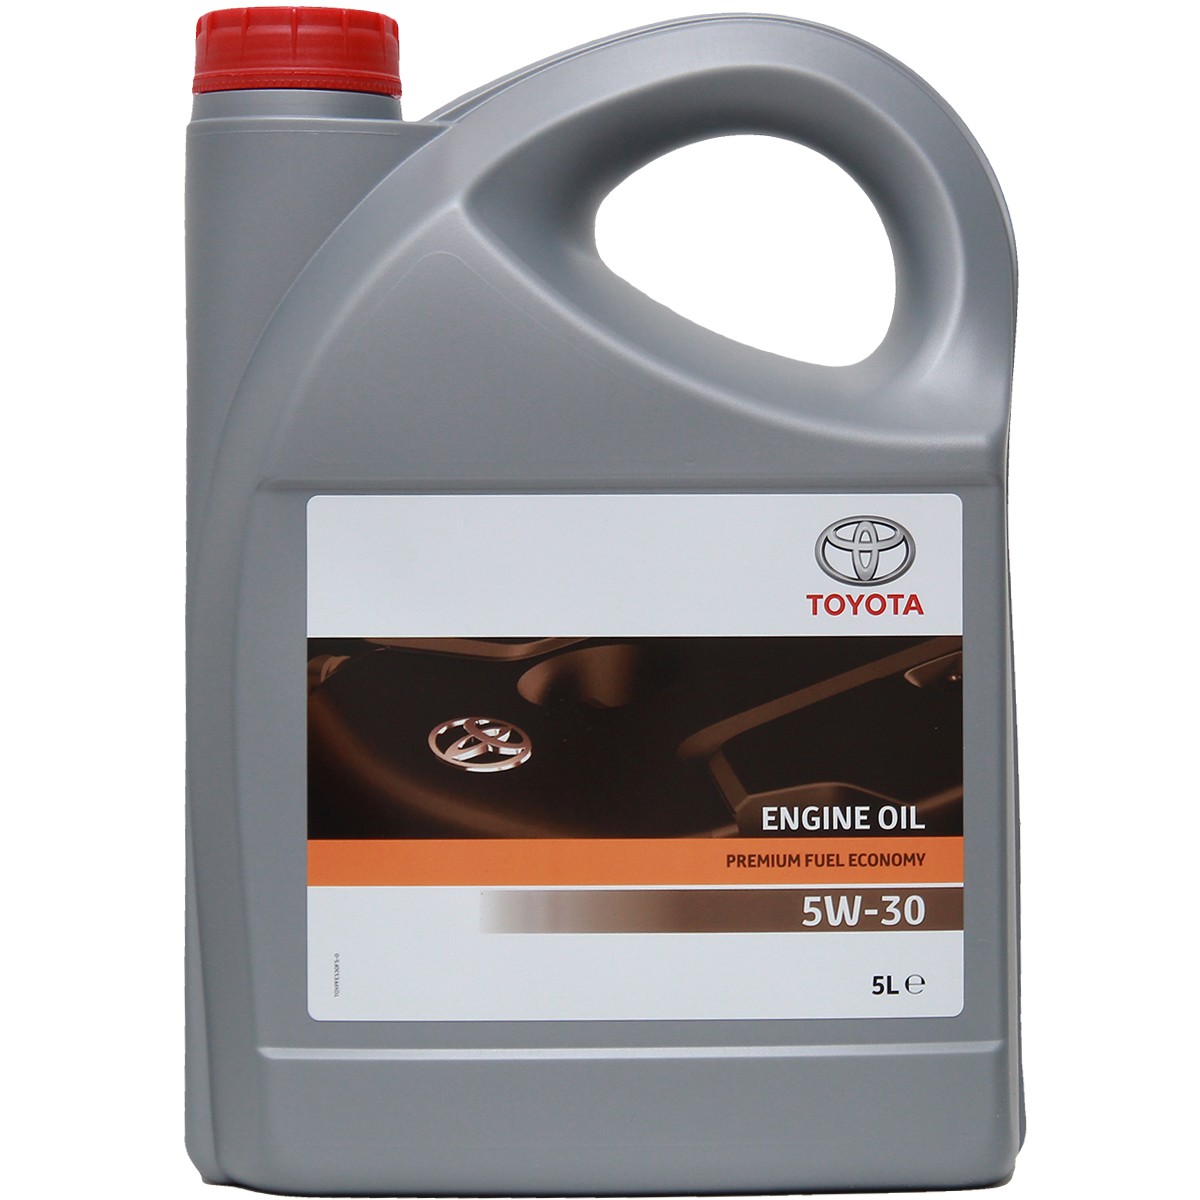 Acquisto Olio per auto TOYOTA 08880-83389 Premium Fuel Economy 5W-30, 5l